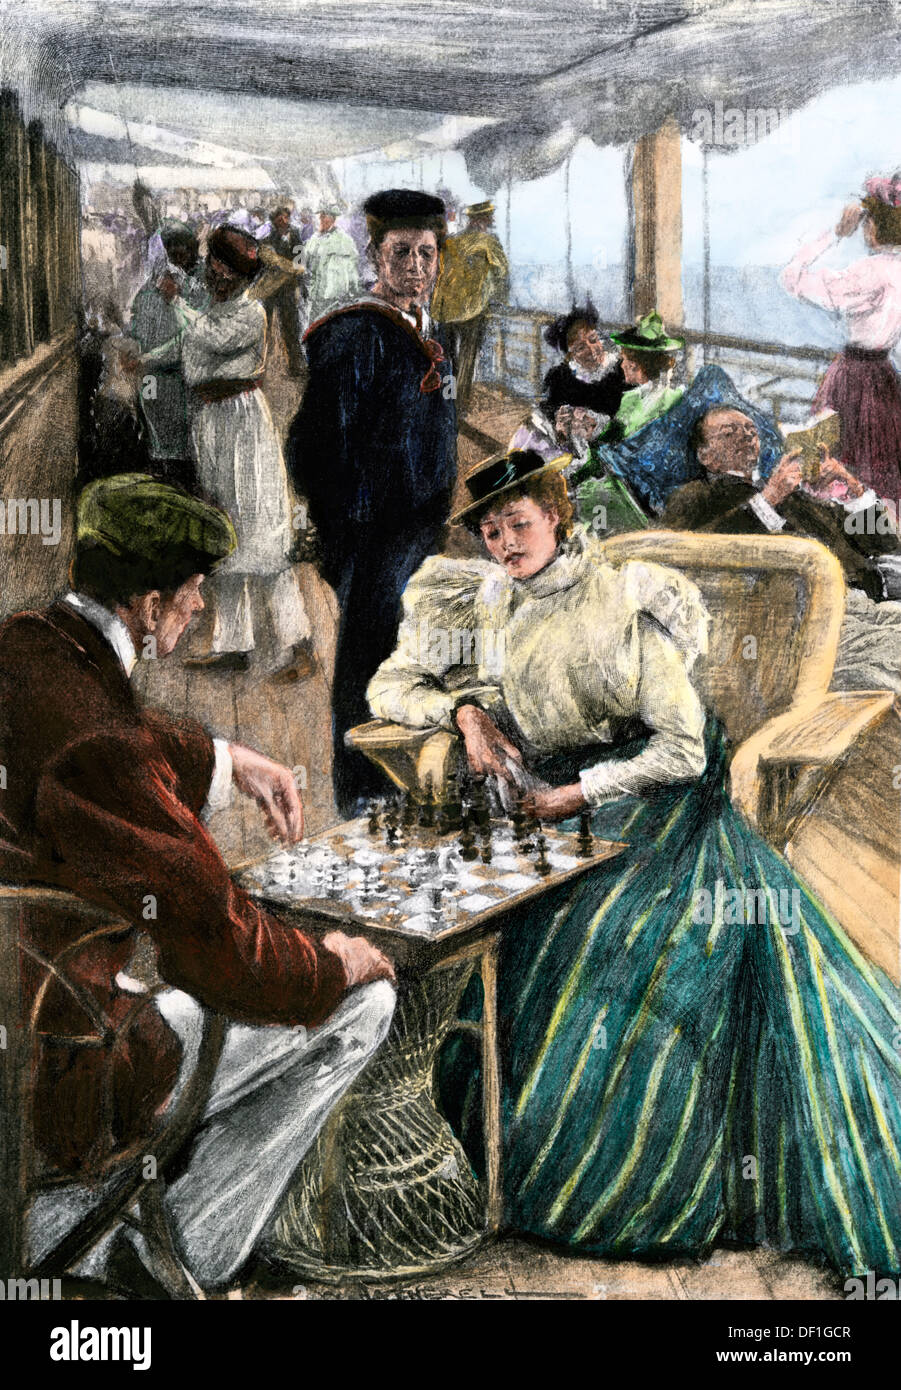 Après-midi aux loisirs des passagers sur le pont d'un bateau à vapeur P & O vers 1900. À la main, gravure sur bois Banque D'Images